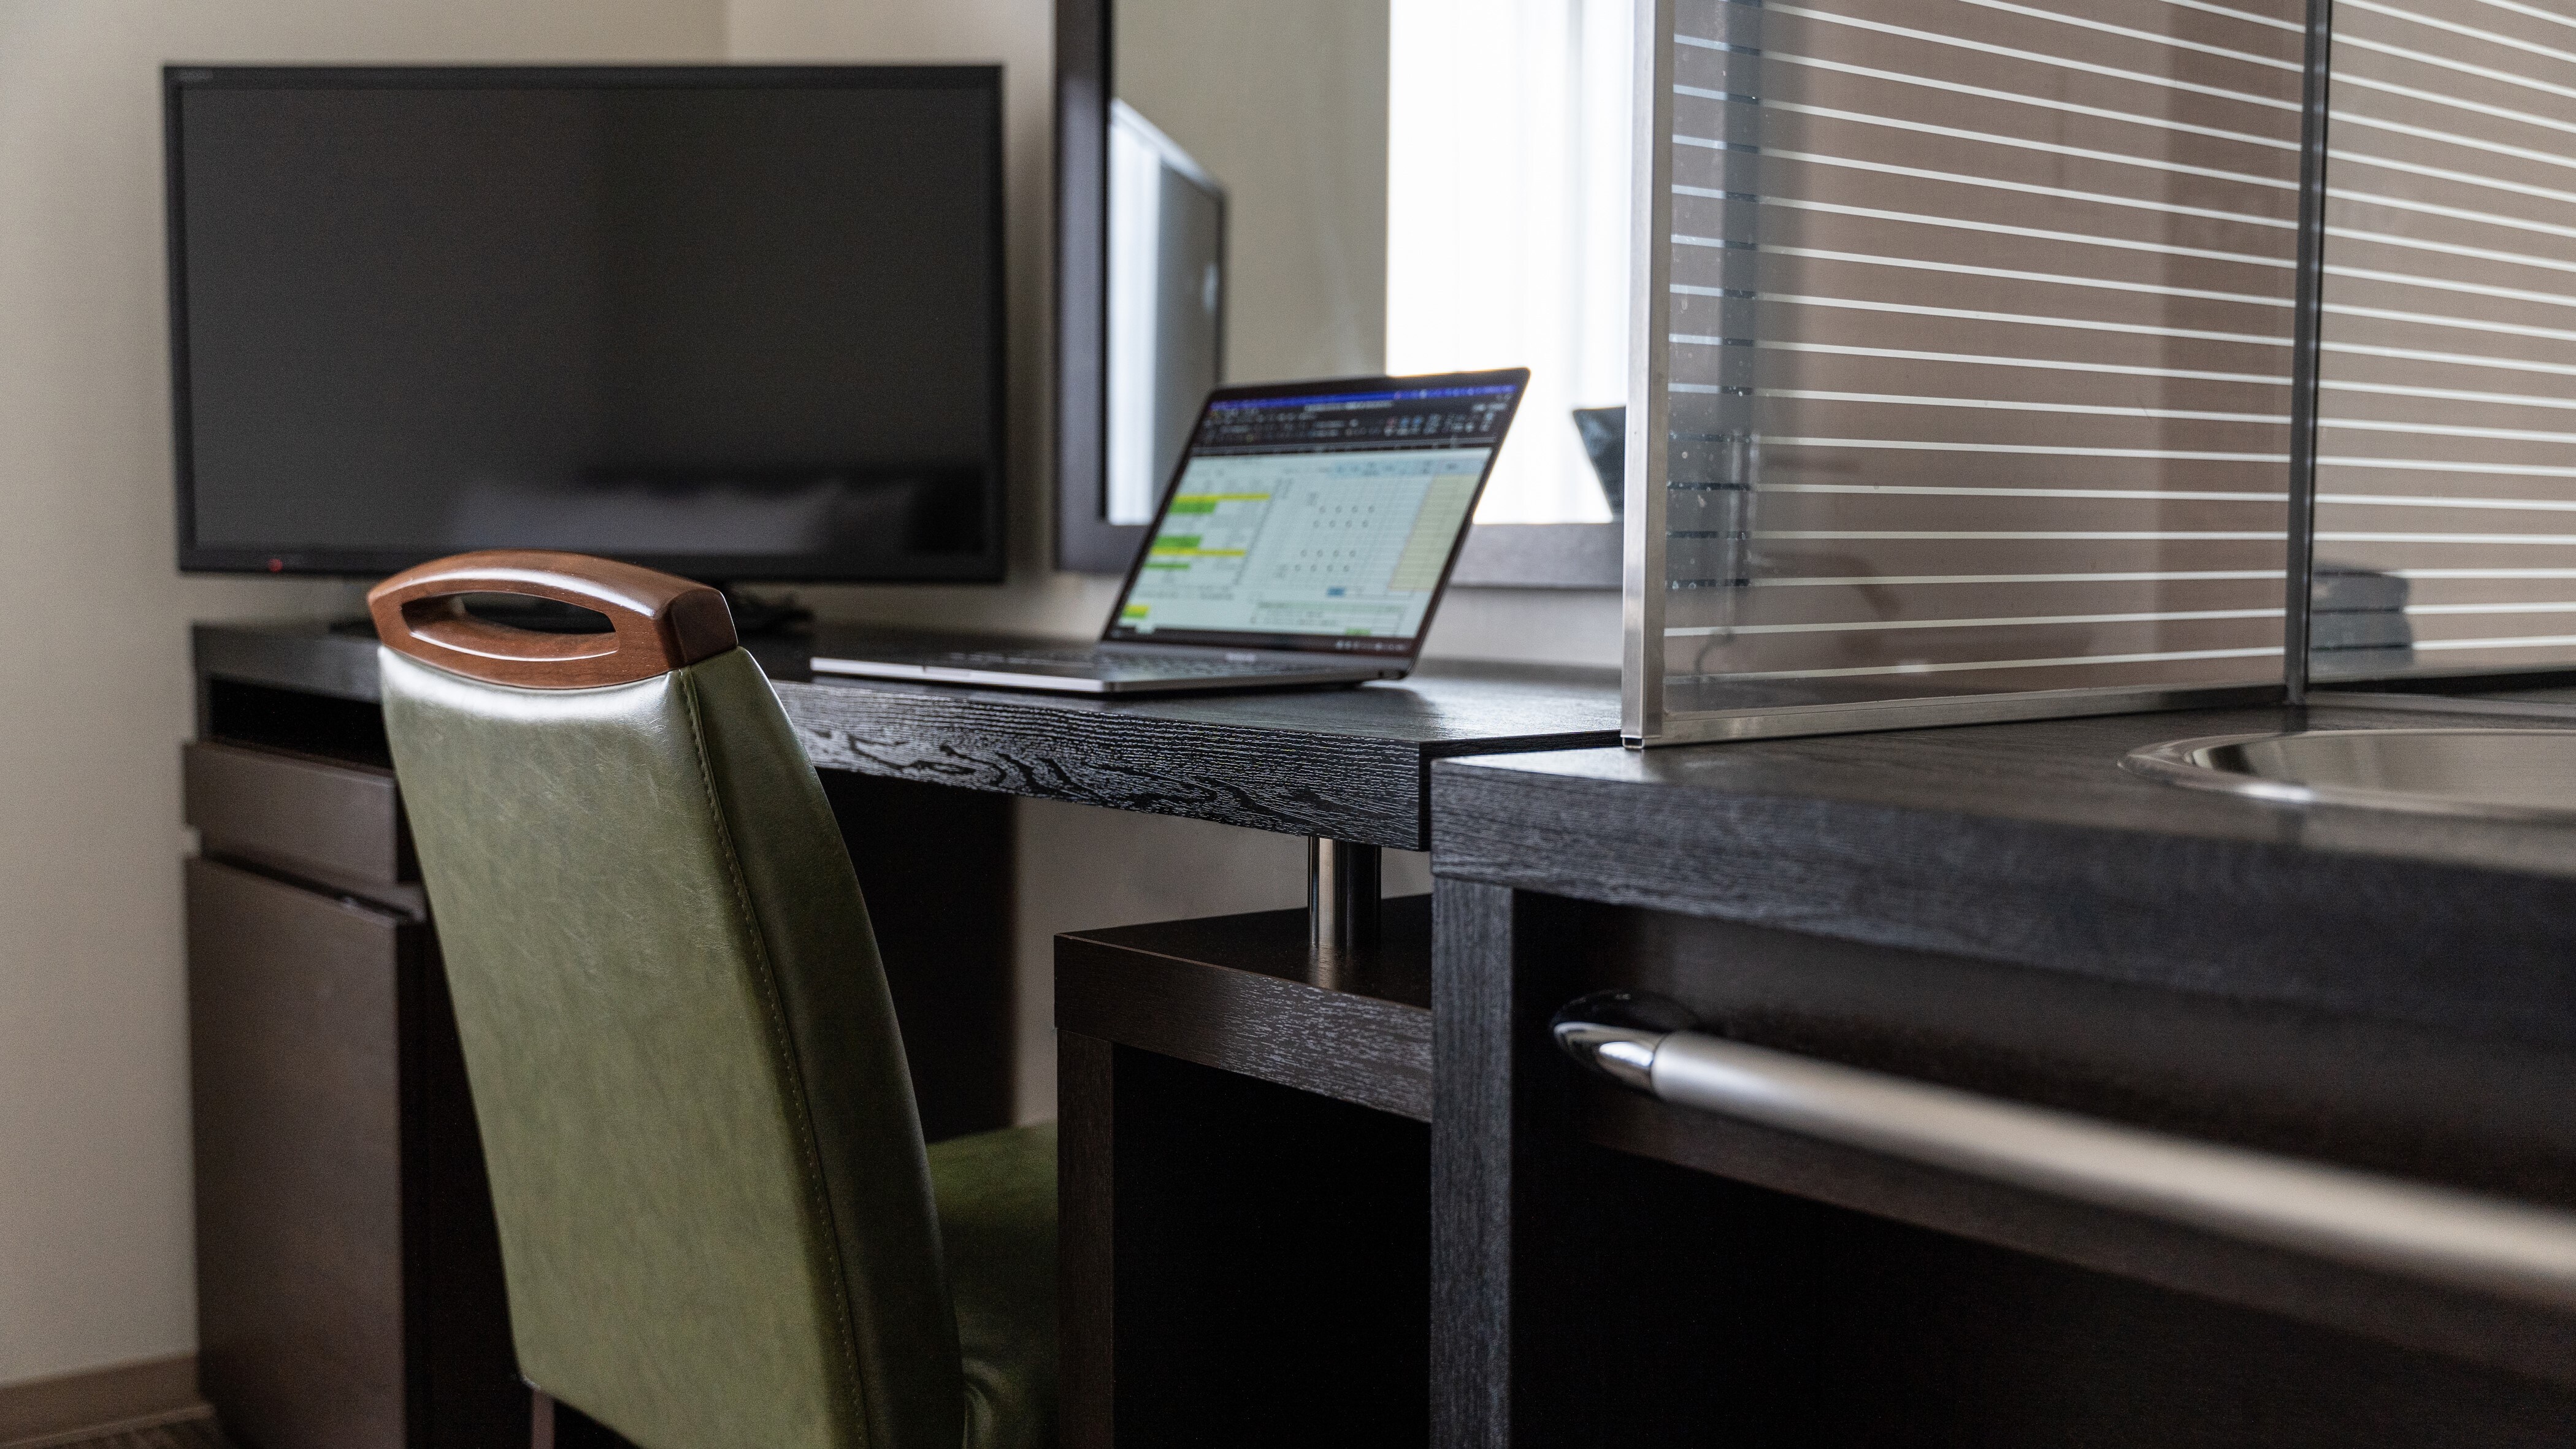 โต๊ะเขียนหนังสือกว้างช่วยให้คุณกระจายเอกสารและงานของคุณ มีเต้ารับที่โต๊ะทำงานด้วยจึงปลอดภัย